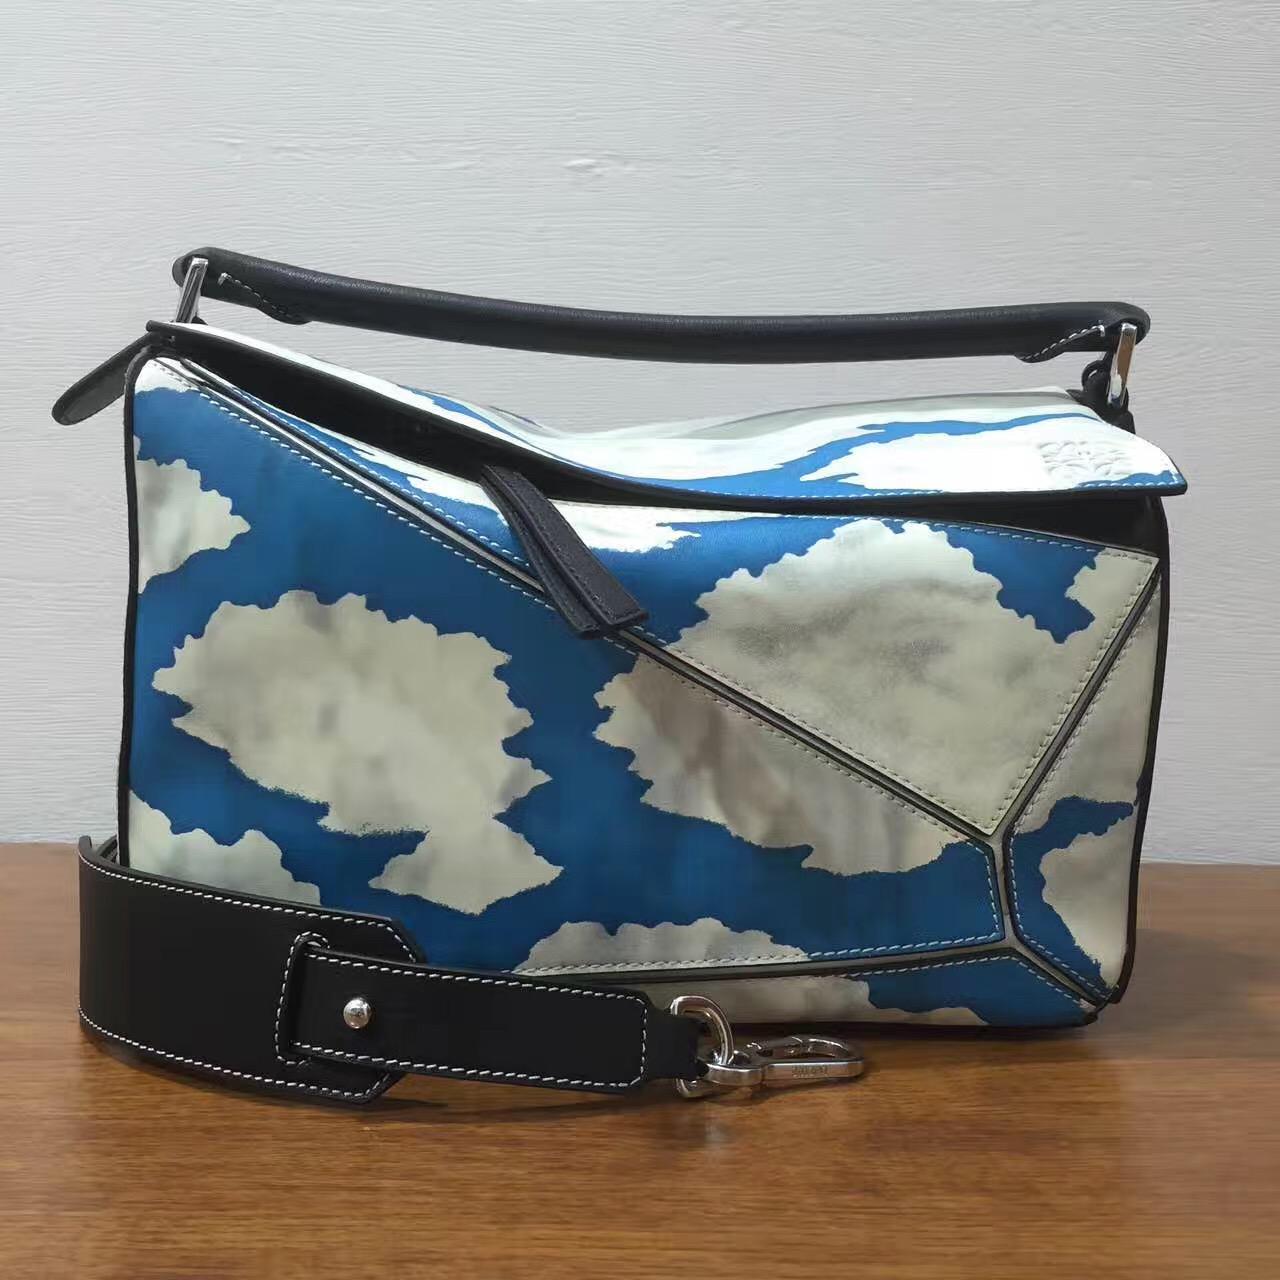 loewe羅意威中號 Puzzle Bag 最新藍天白雲獨特的風景主題款